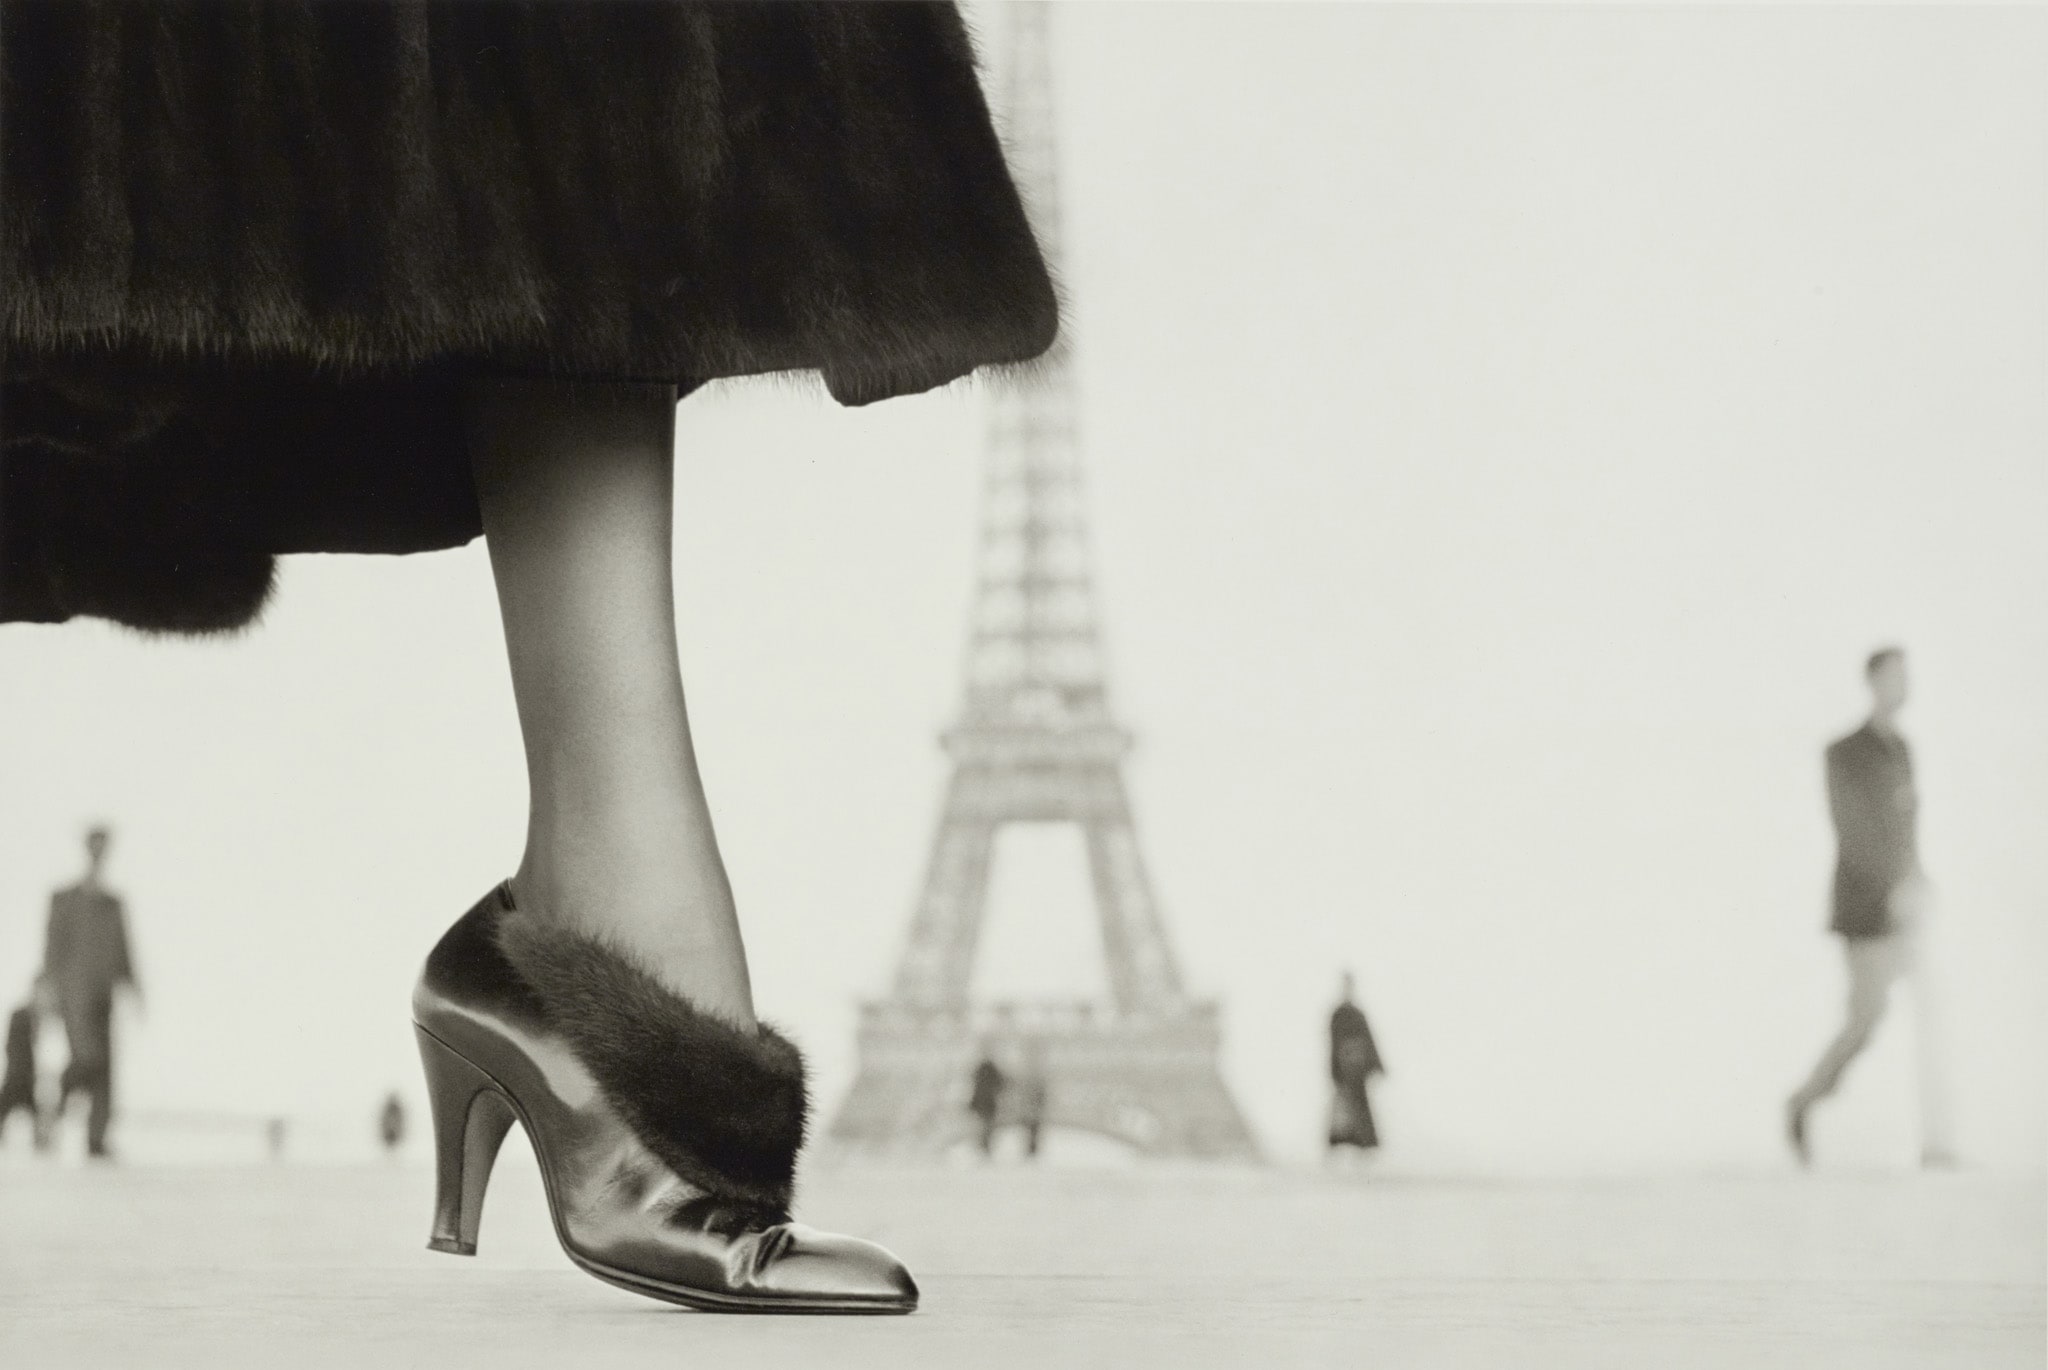 Richard Avedon, Shoe by Perugia, Place du Trocadéro, Paris, August 1948.